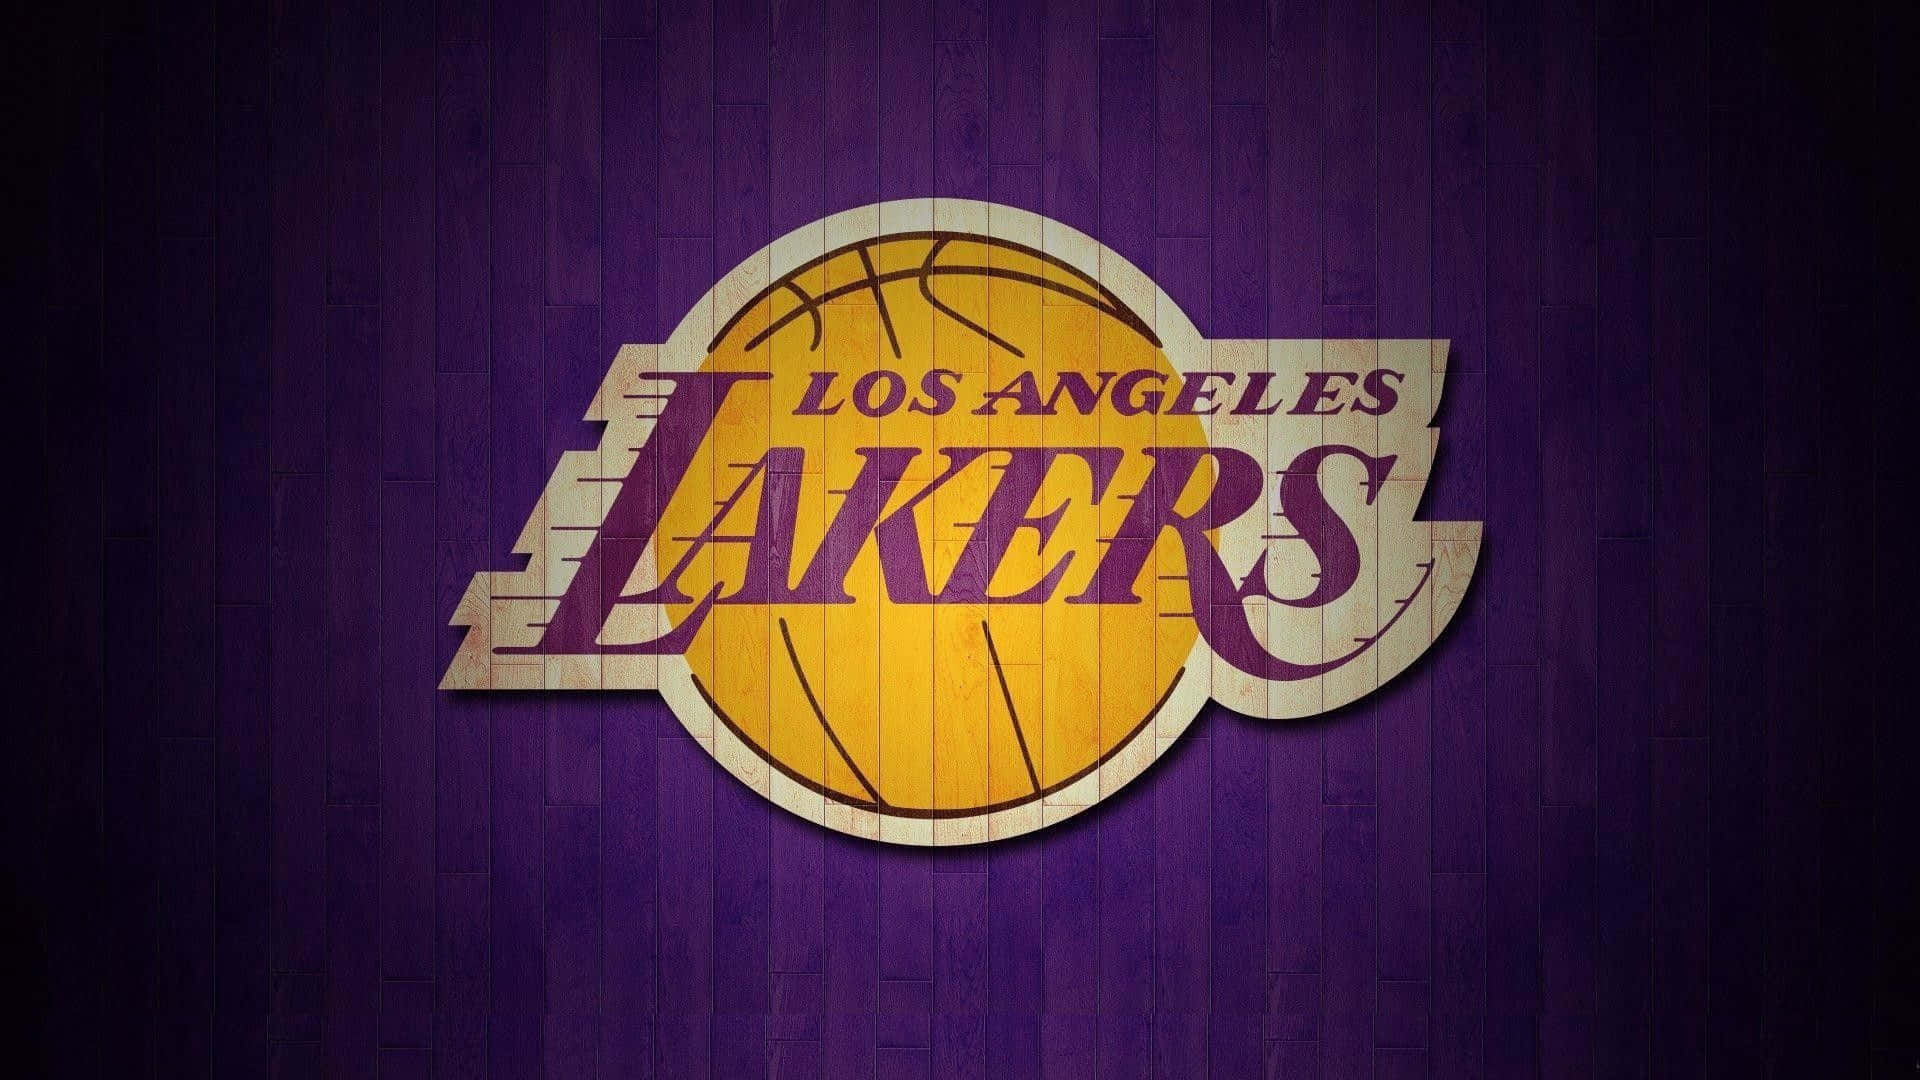 Loslos Angeles Lakers Toman El Centro De La Cancha.